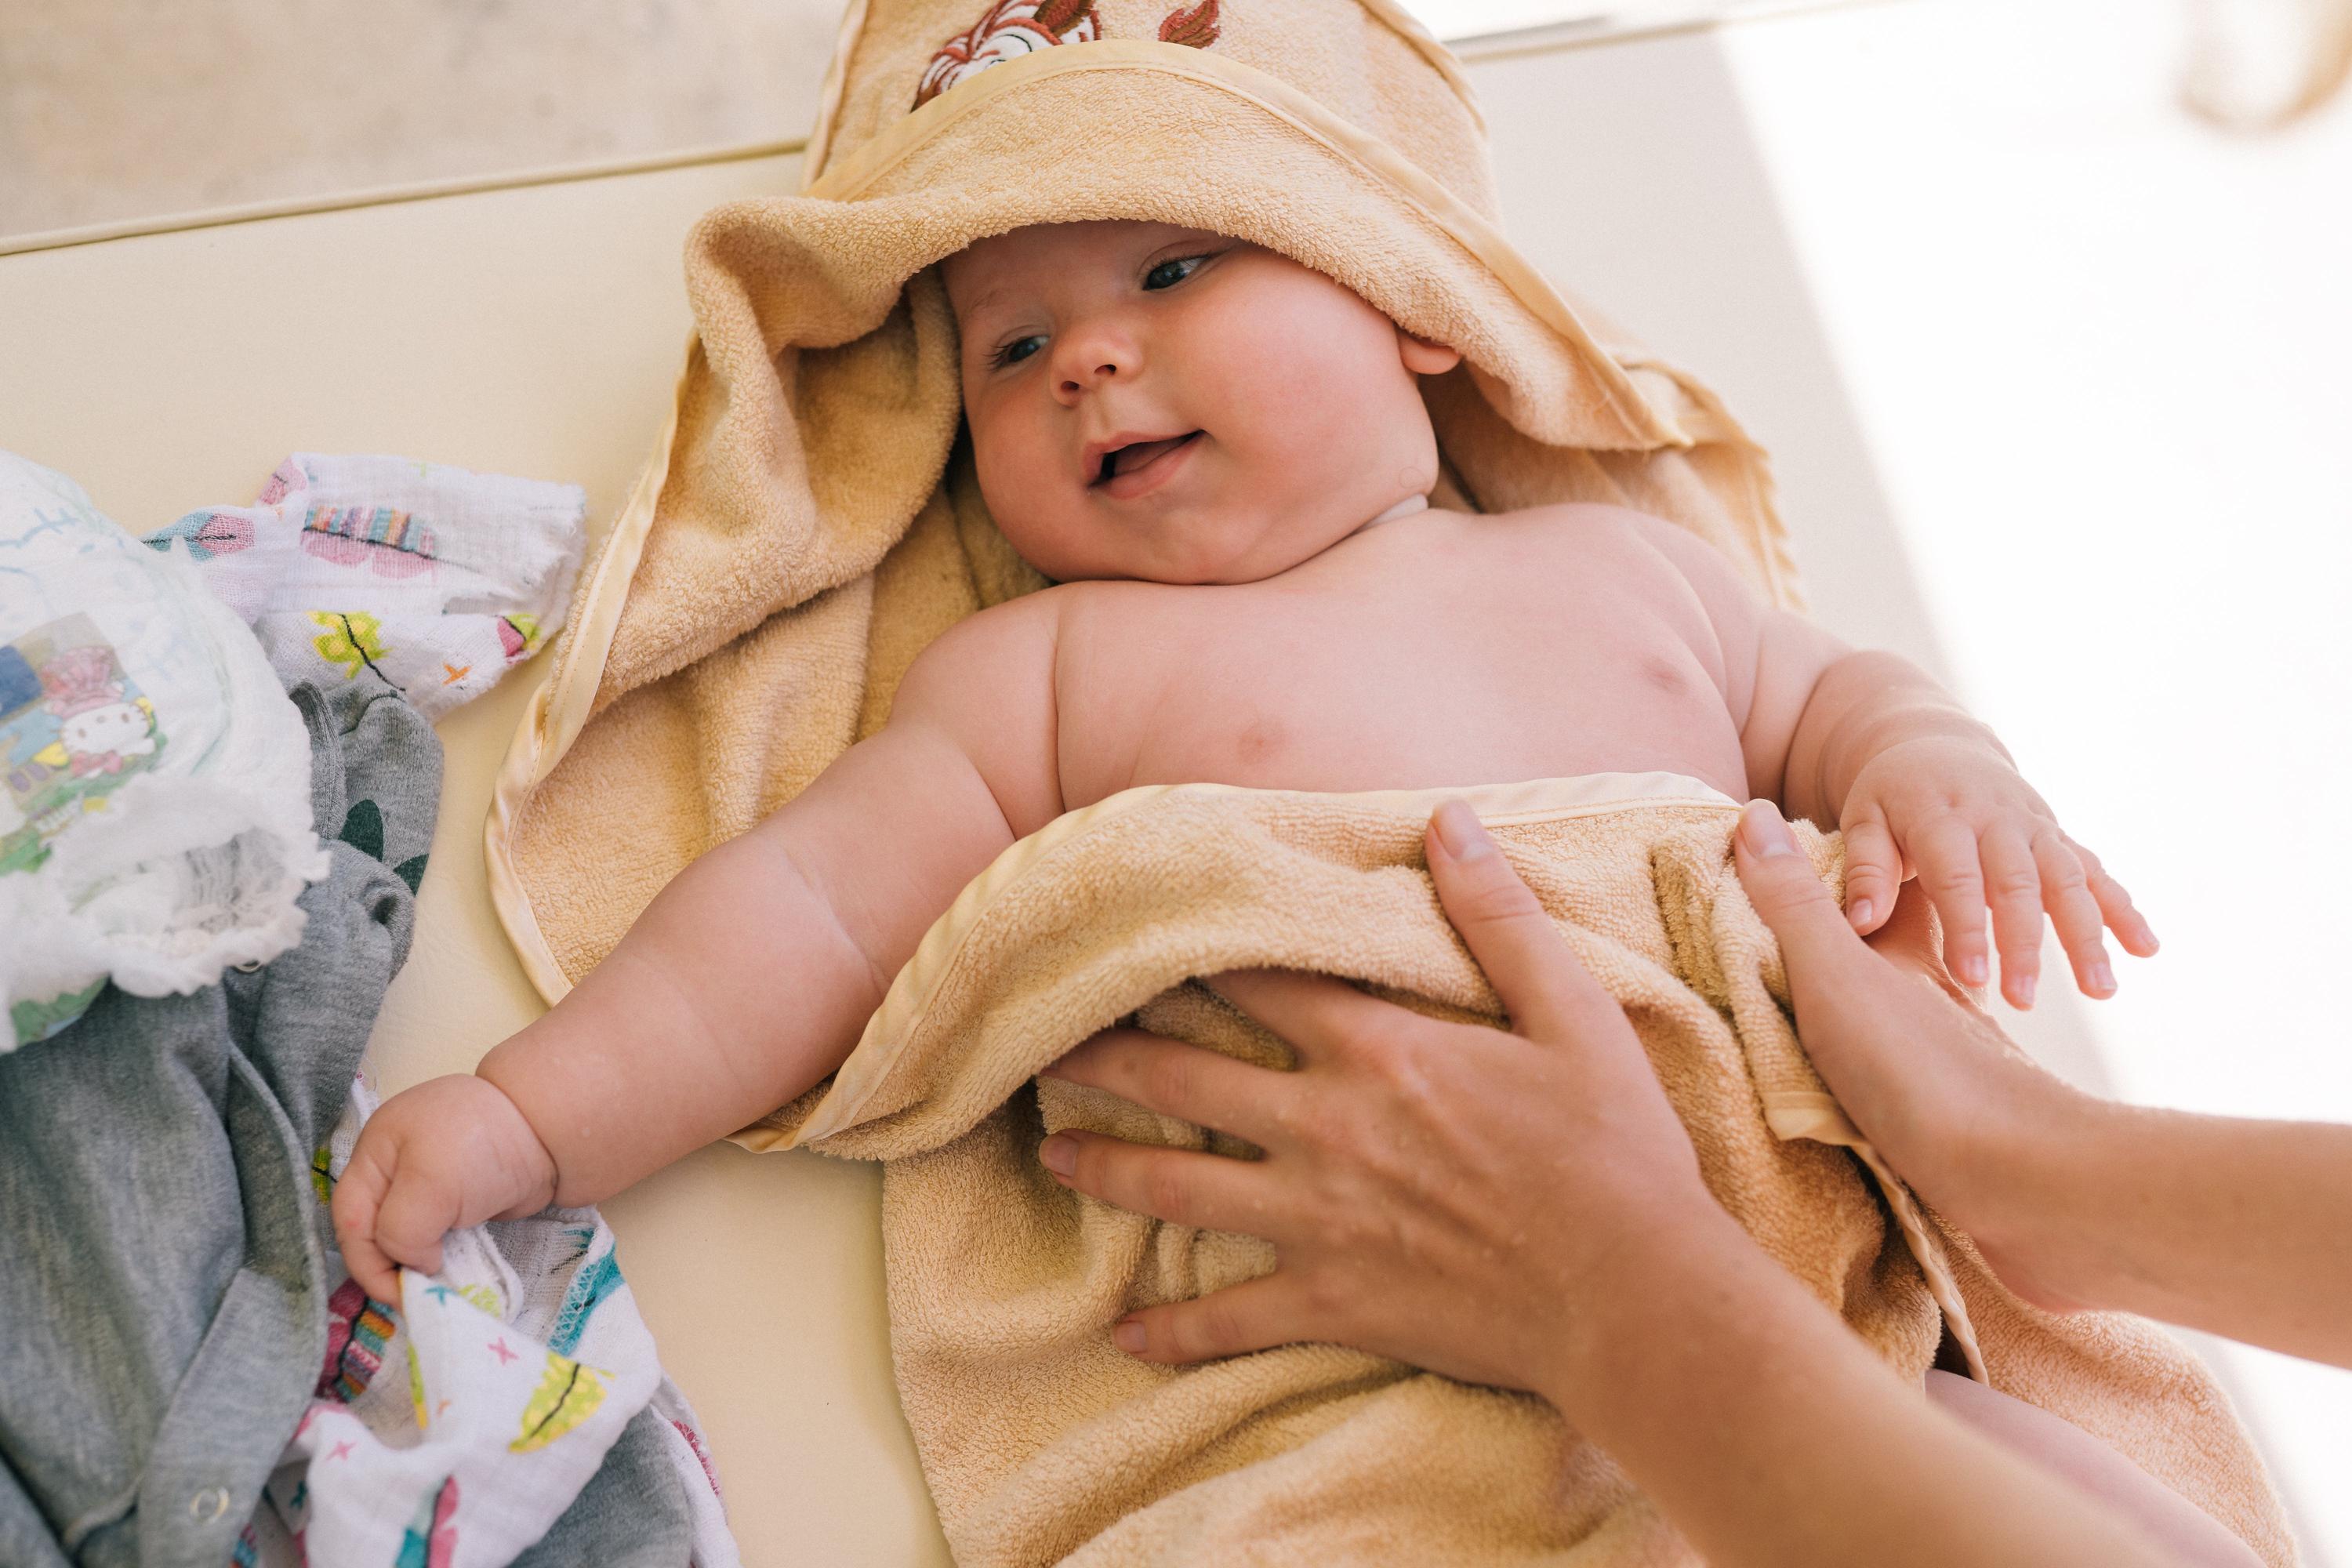 Przygotowanie do masażu: odpowiednie warunki i bezpieczeństwo niemowlęcia